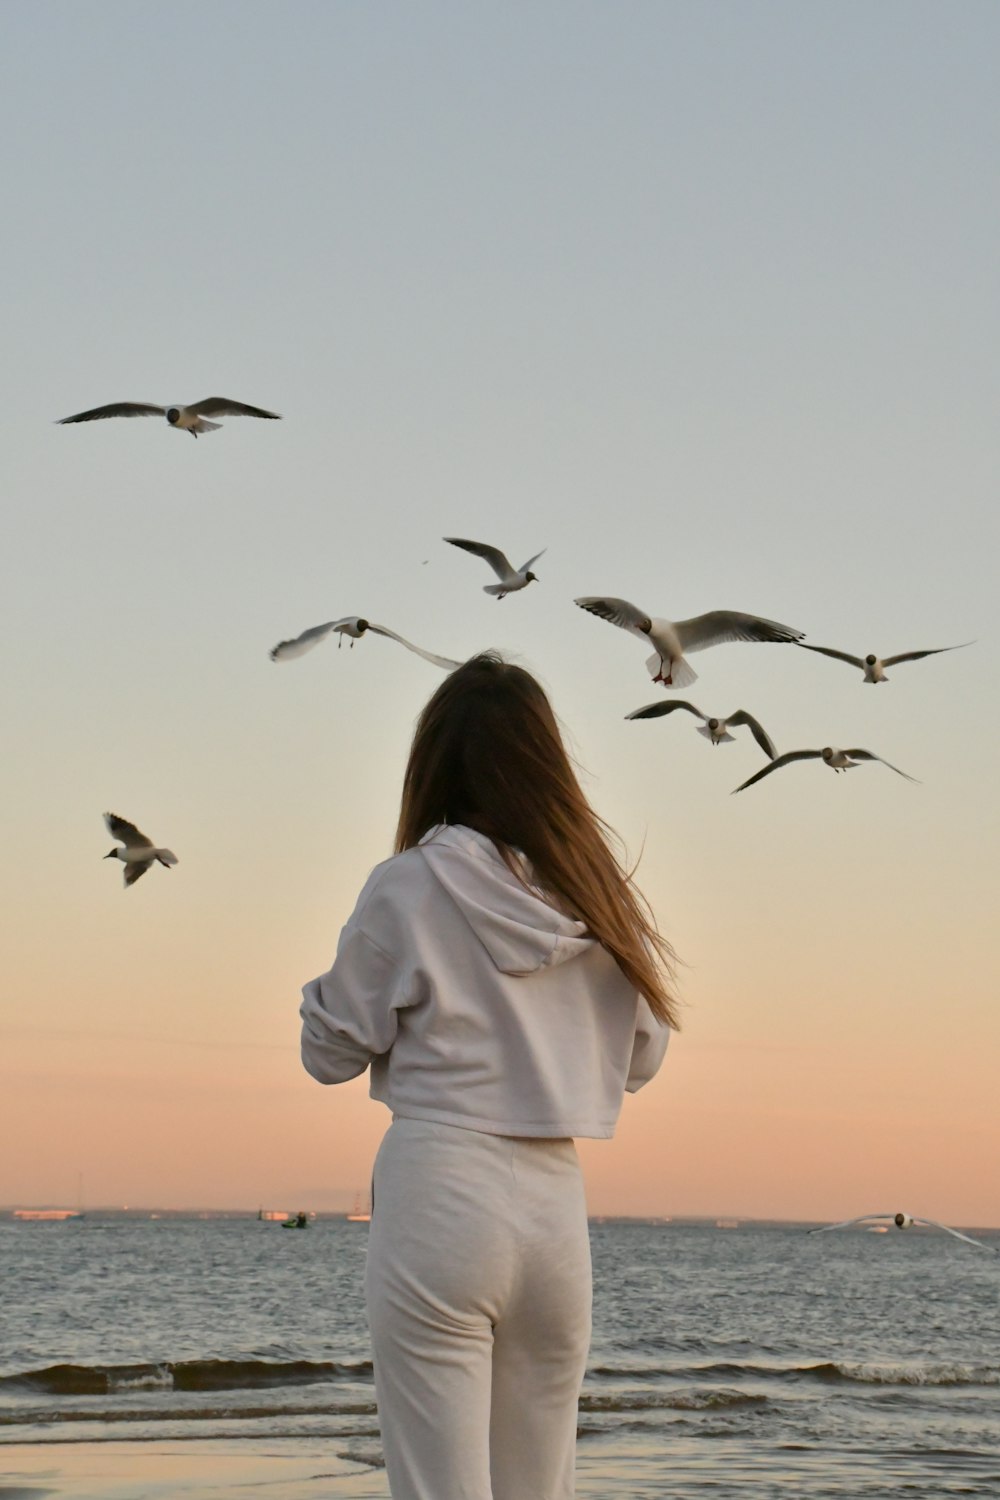 흰색 긴팔 셔츠를 입은 여자는 낮에 날아다니는 새들을 보고 있다